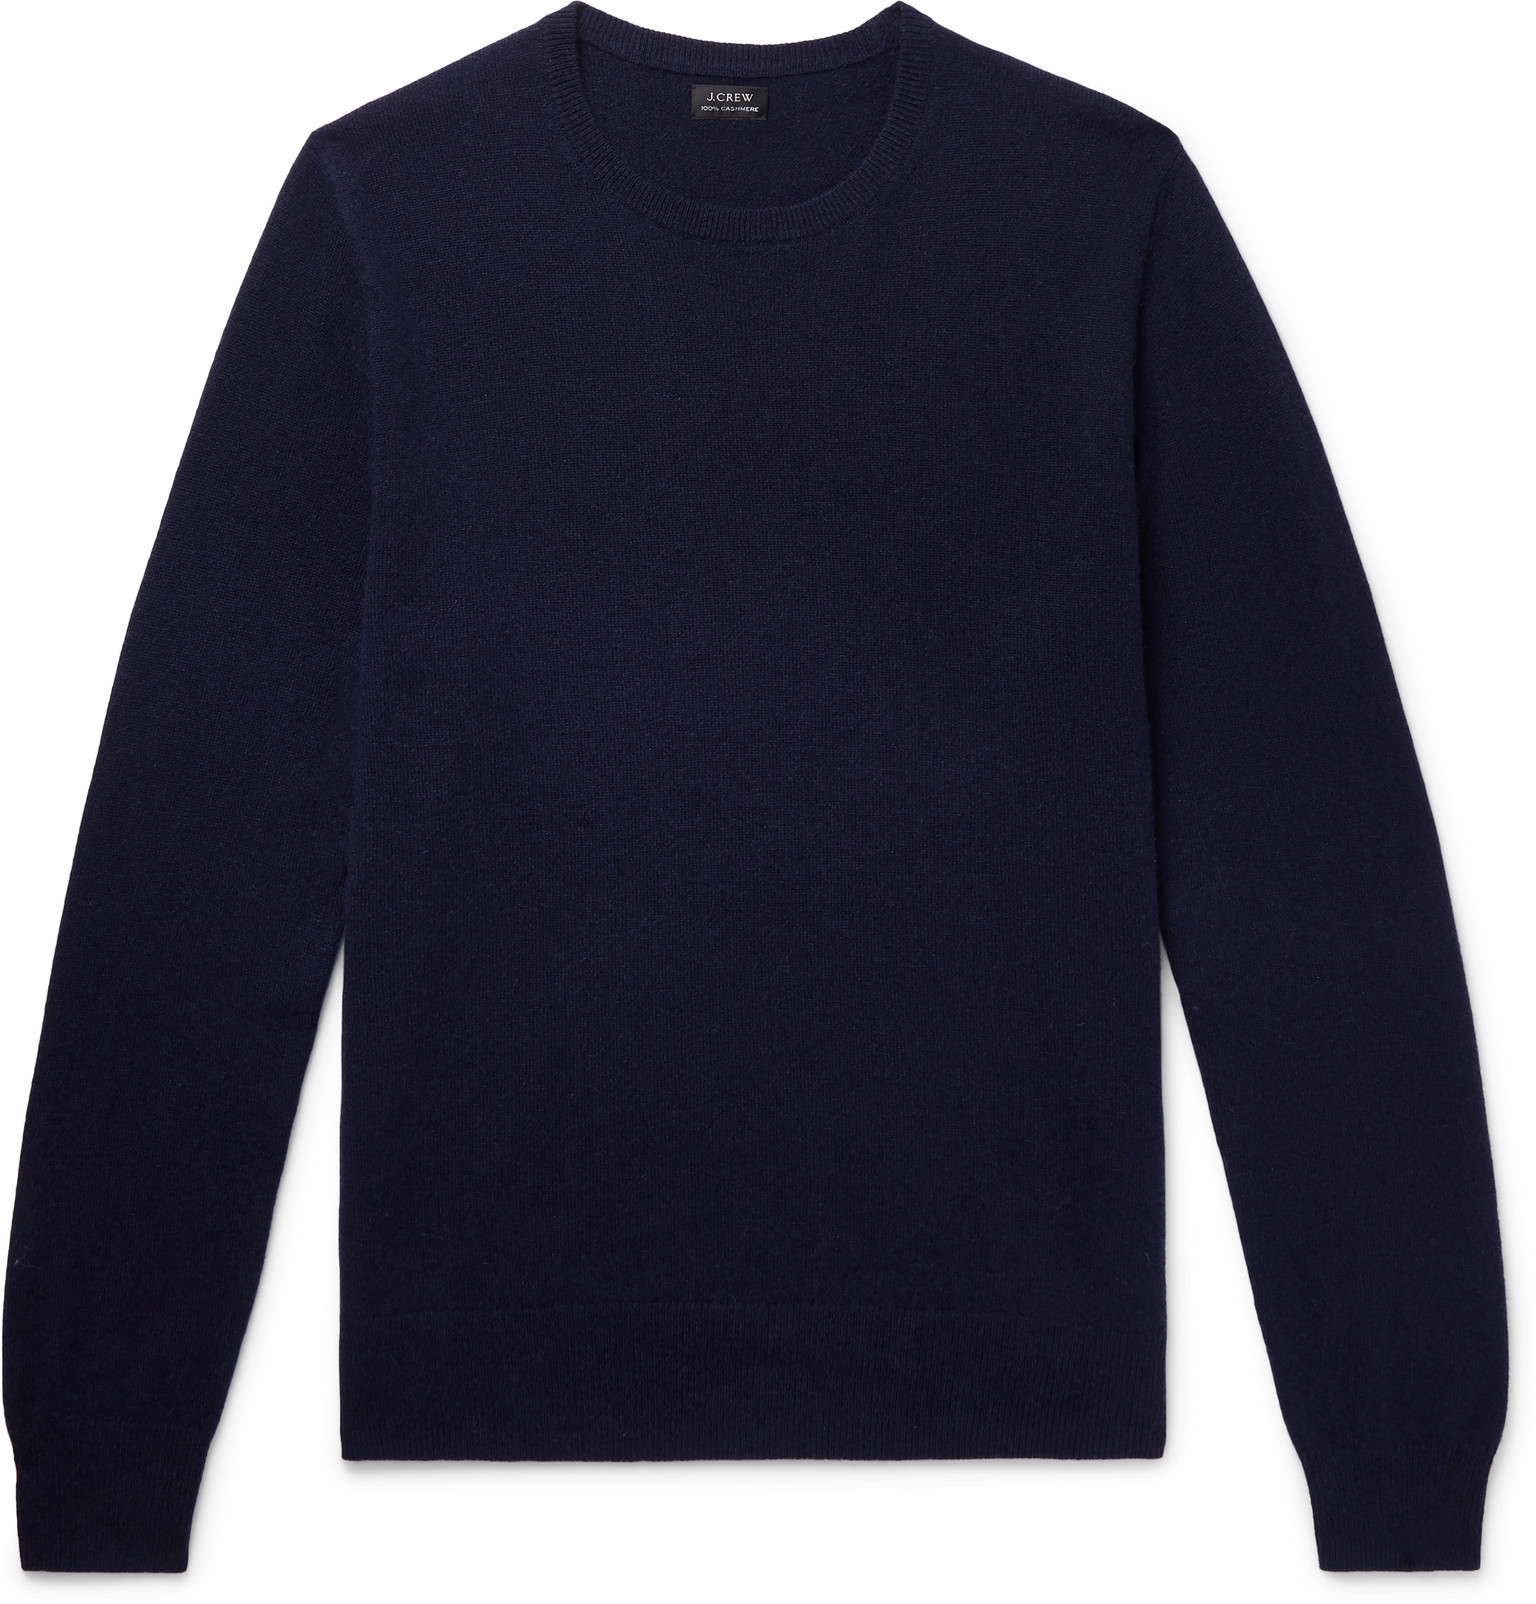 J.Crew - Cashmere Sweater - Men - Blue | The Fashionisto